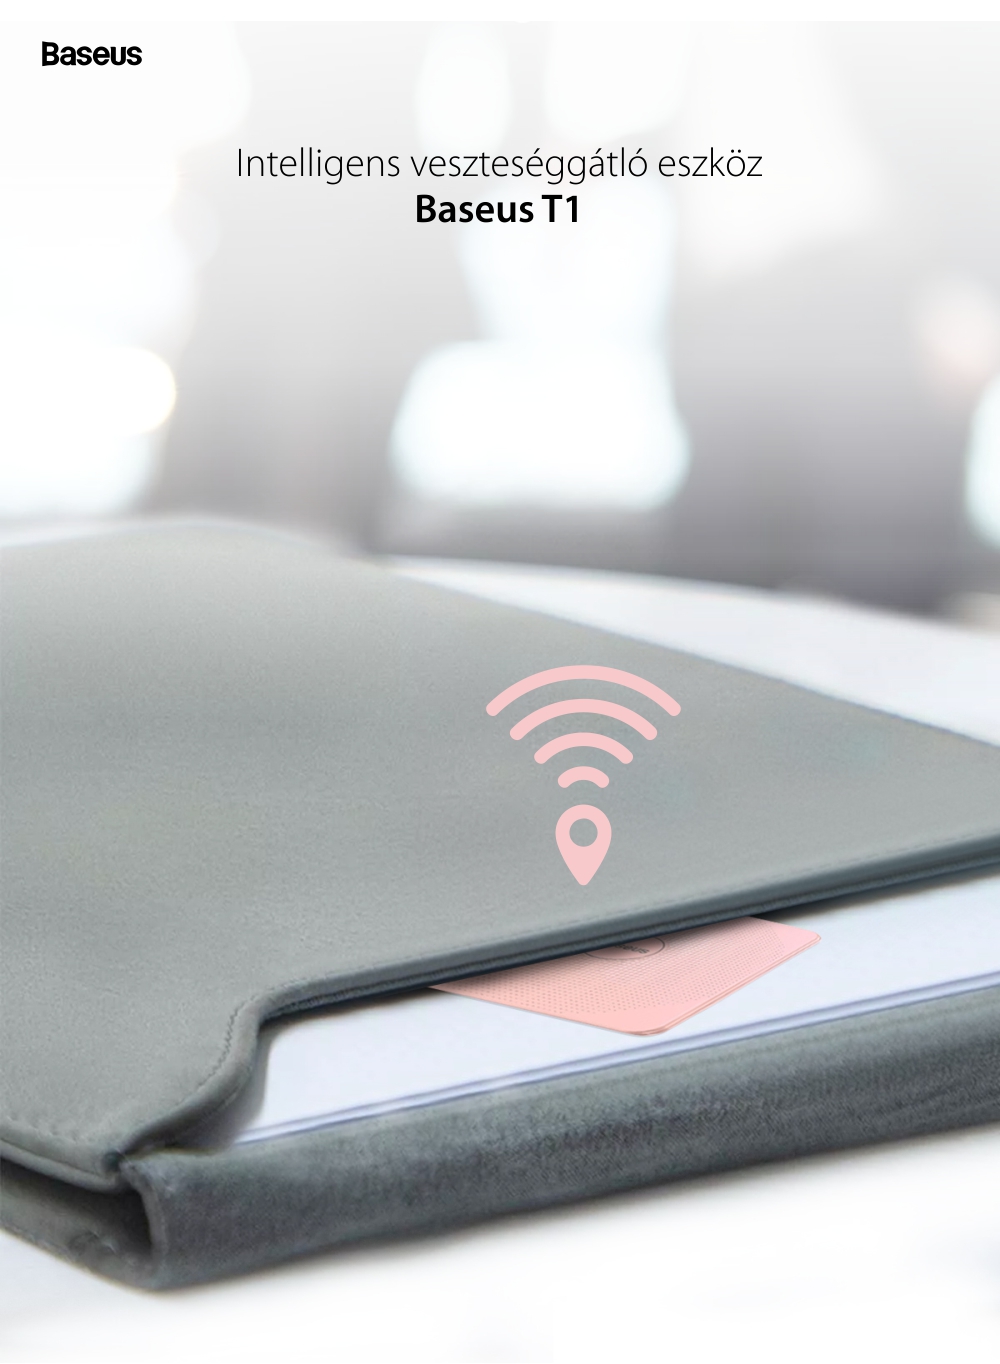 Baseus Intelligent T1 Veszteséggátló, Bluetooth, Alkalmazásfigyelés, Riasztás, Rózsaszín